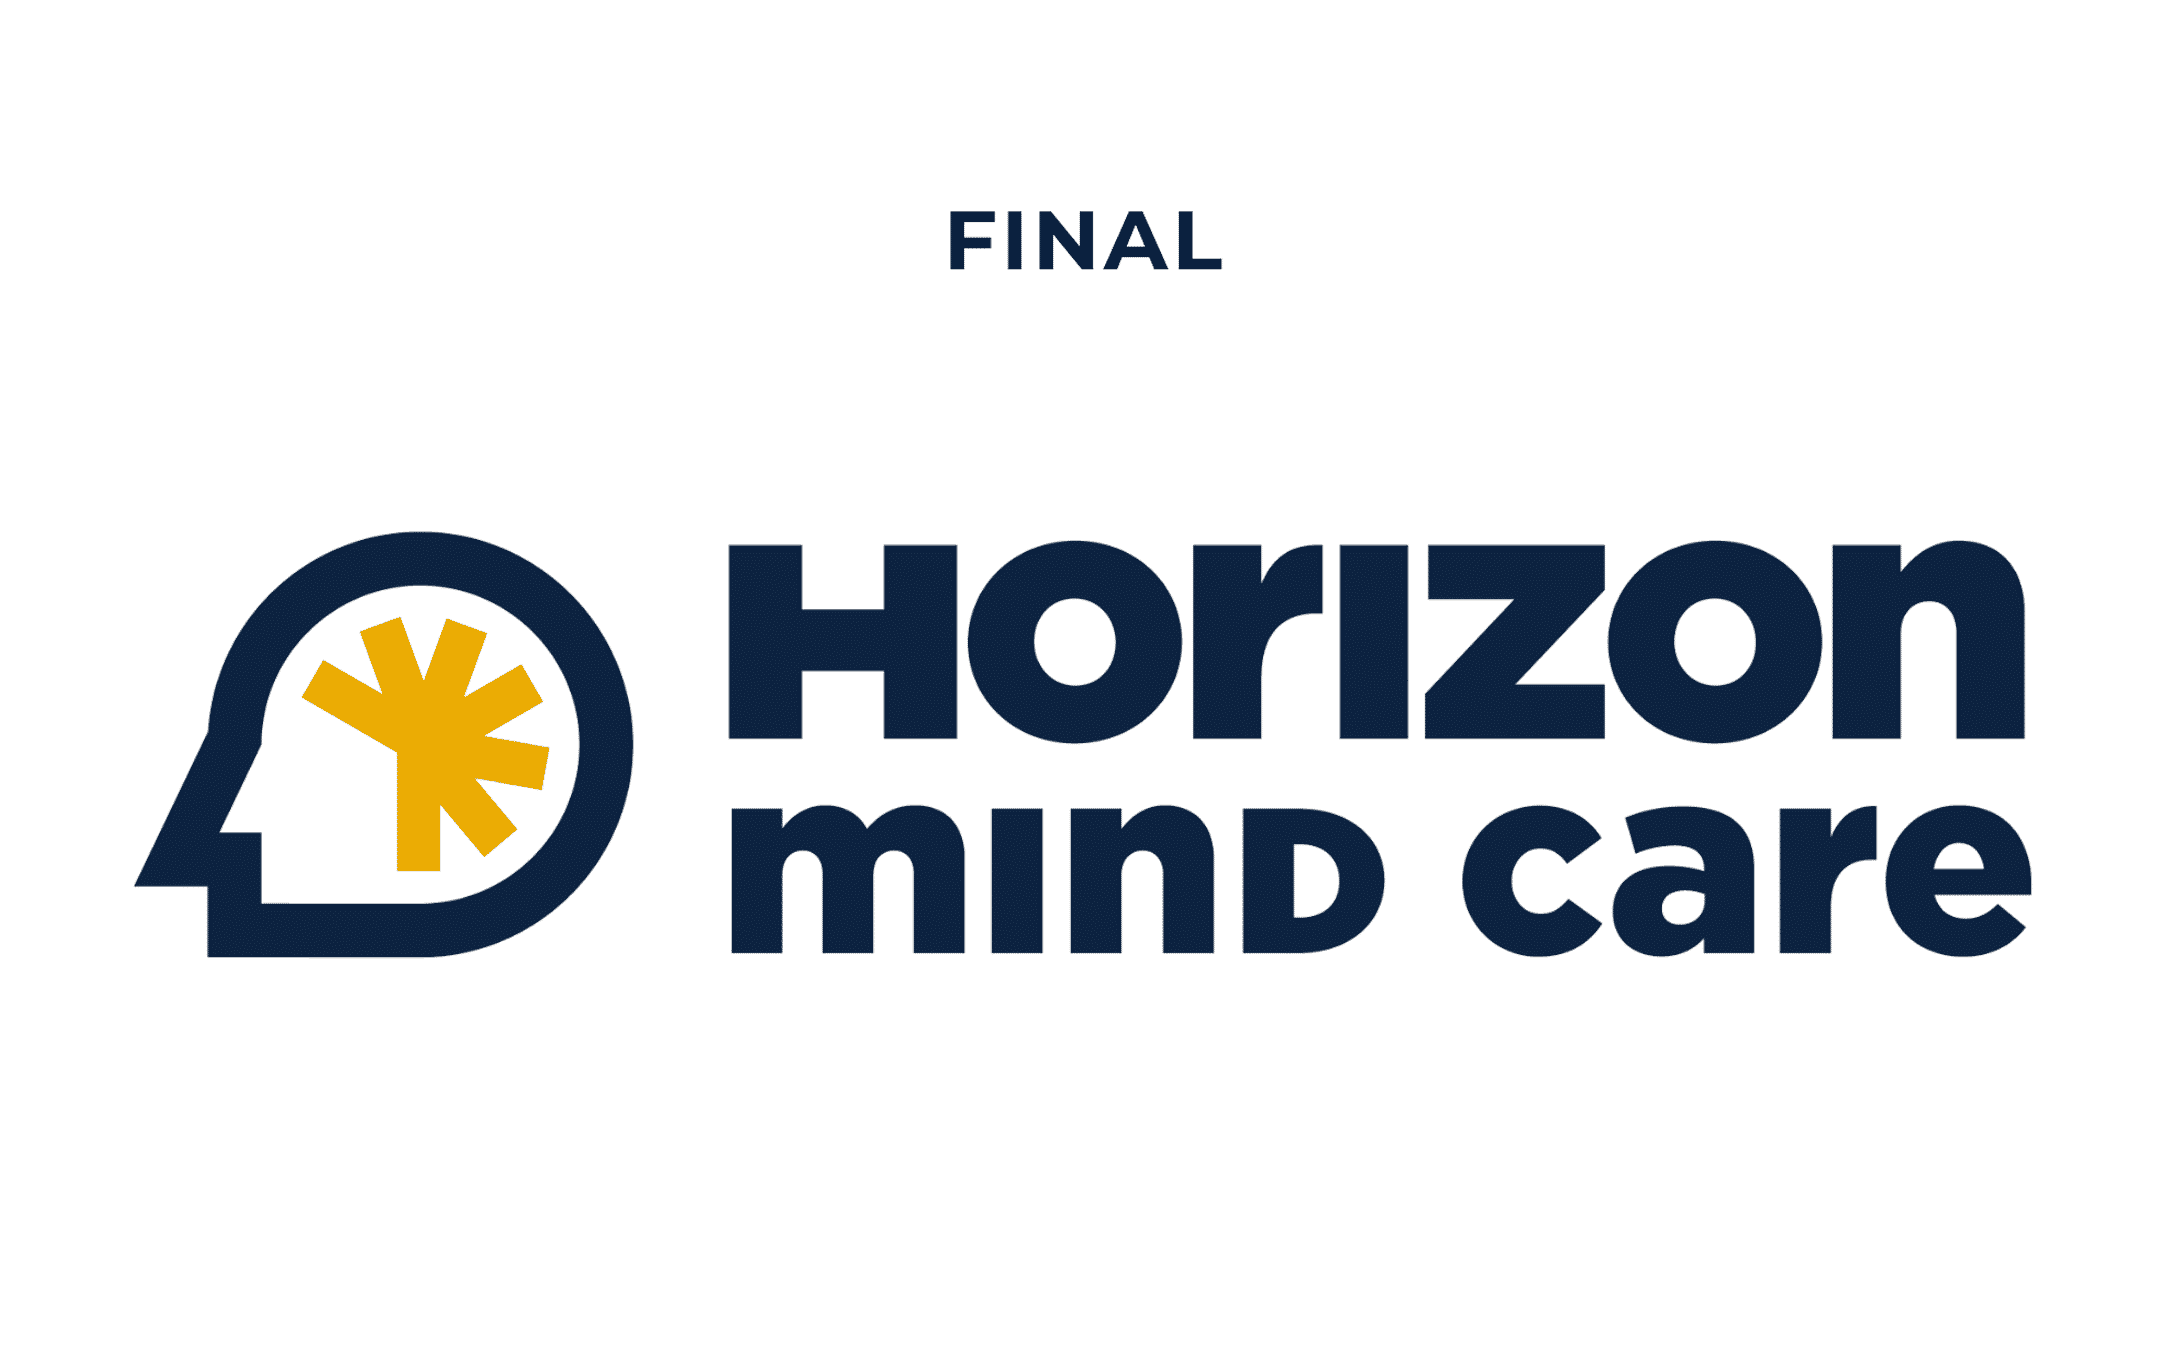 Horizon 3